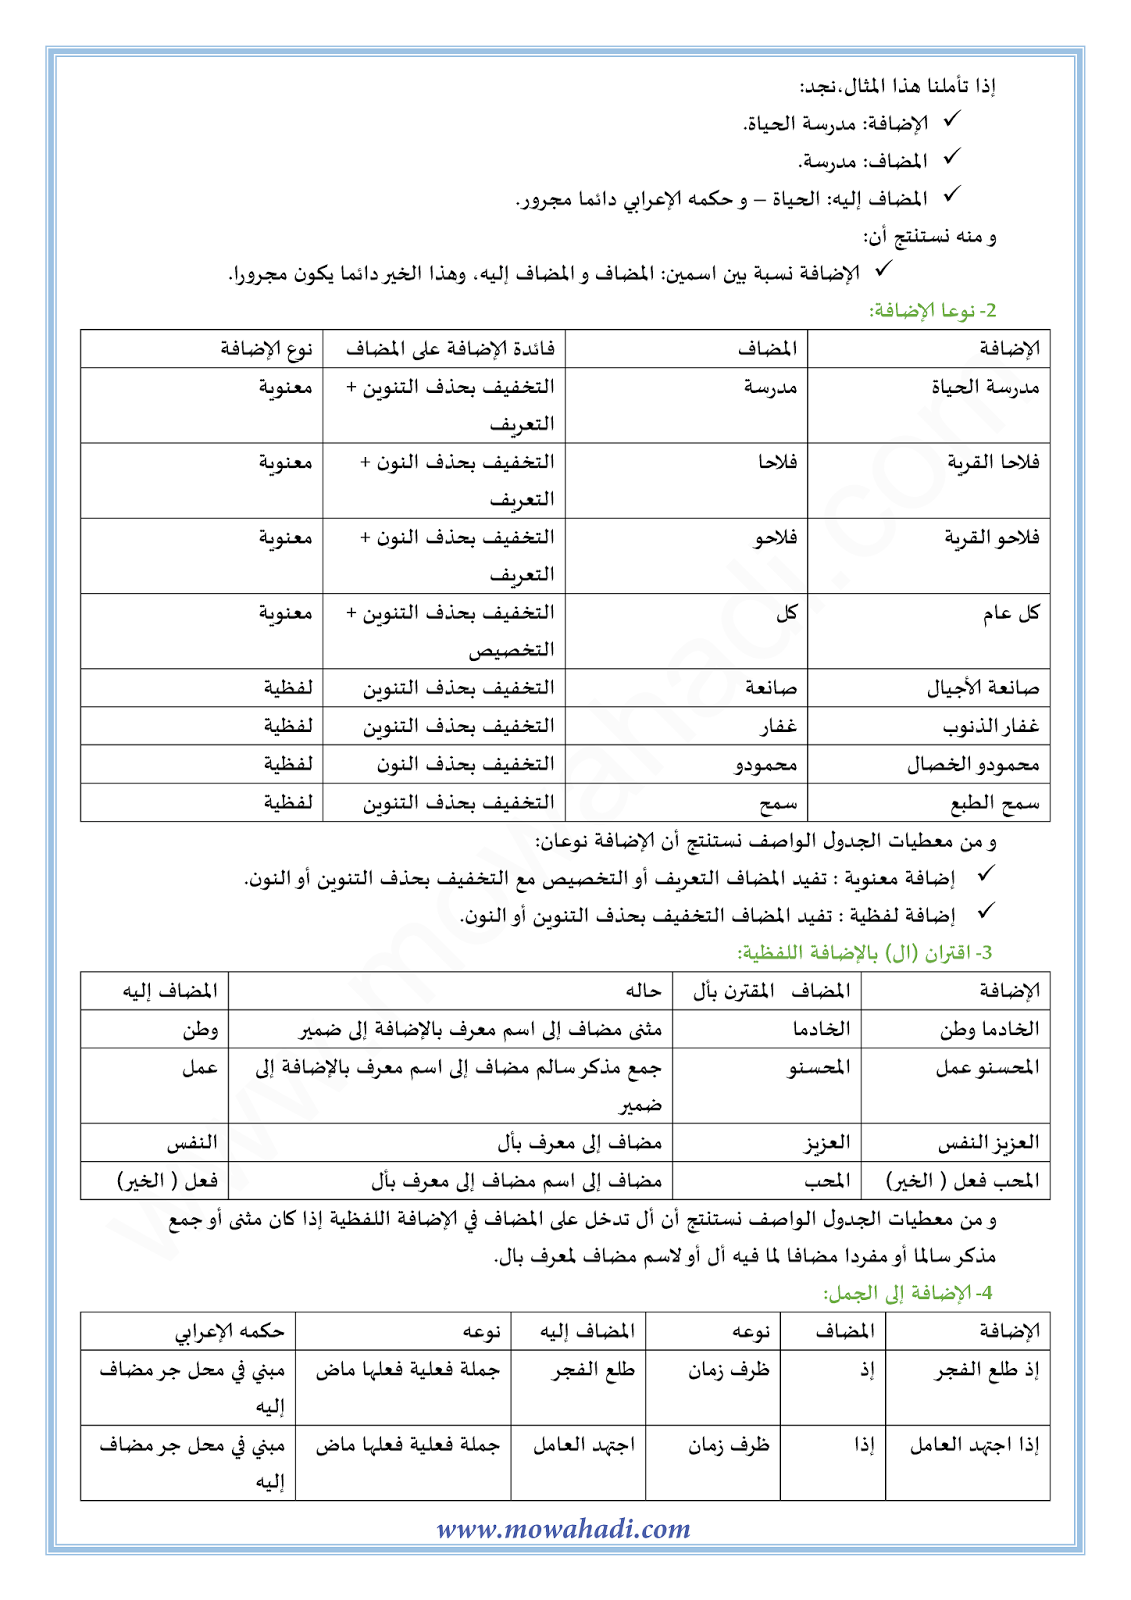 الدرس اللغوي الإضافة للسنة الثالثة اعدادي في مادة اللغة العربية 6-cours-dars-loghawi3_002